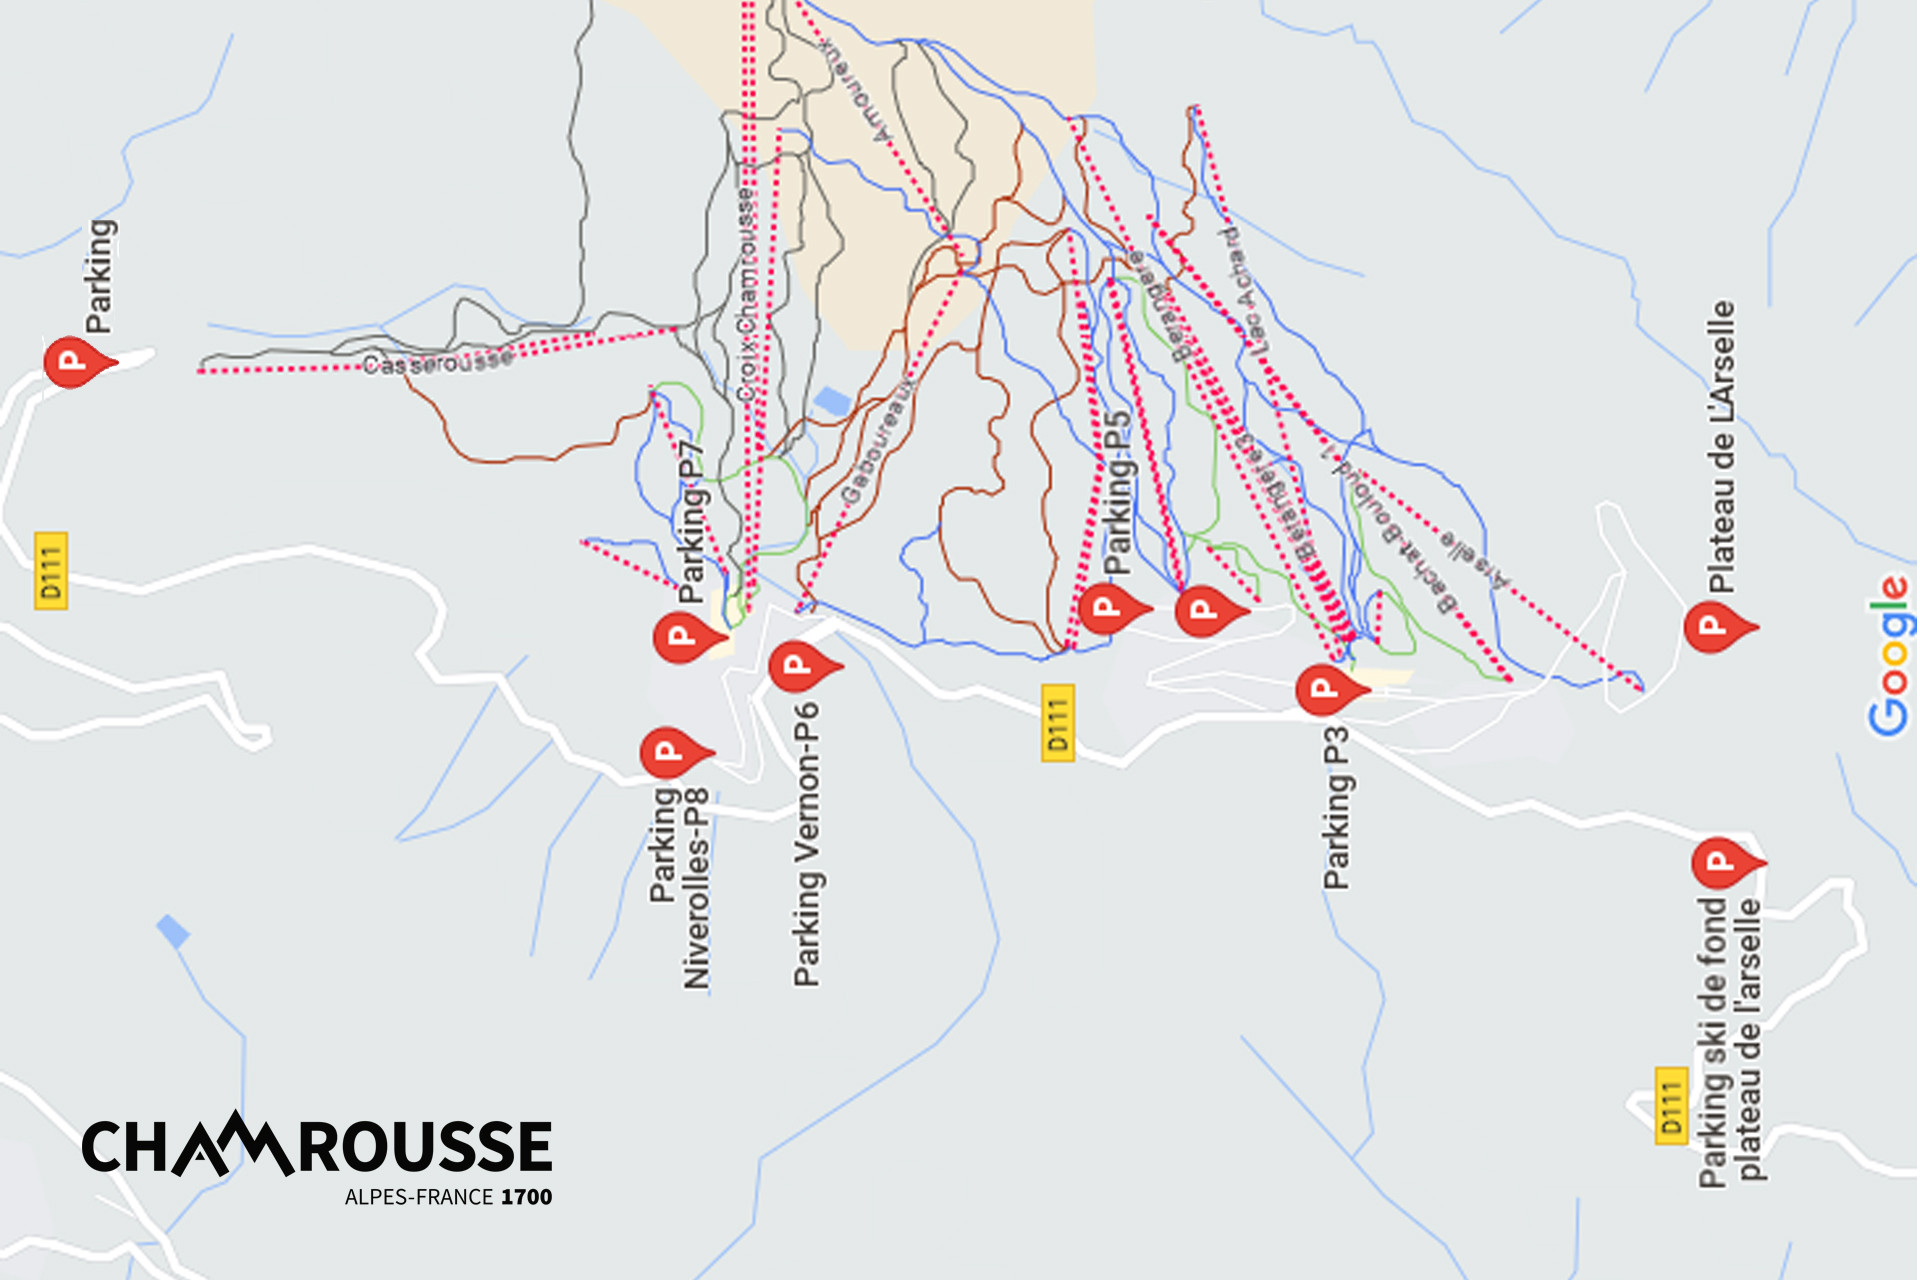 Chamrousse parking map car bus mountain ski resort grenoble isere alpes france